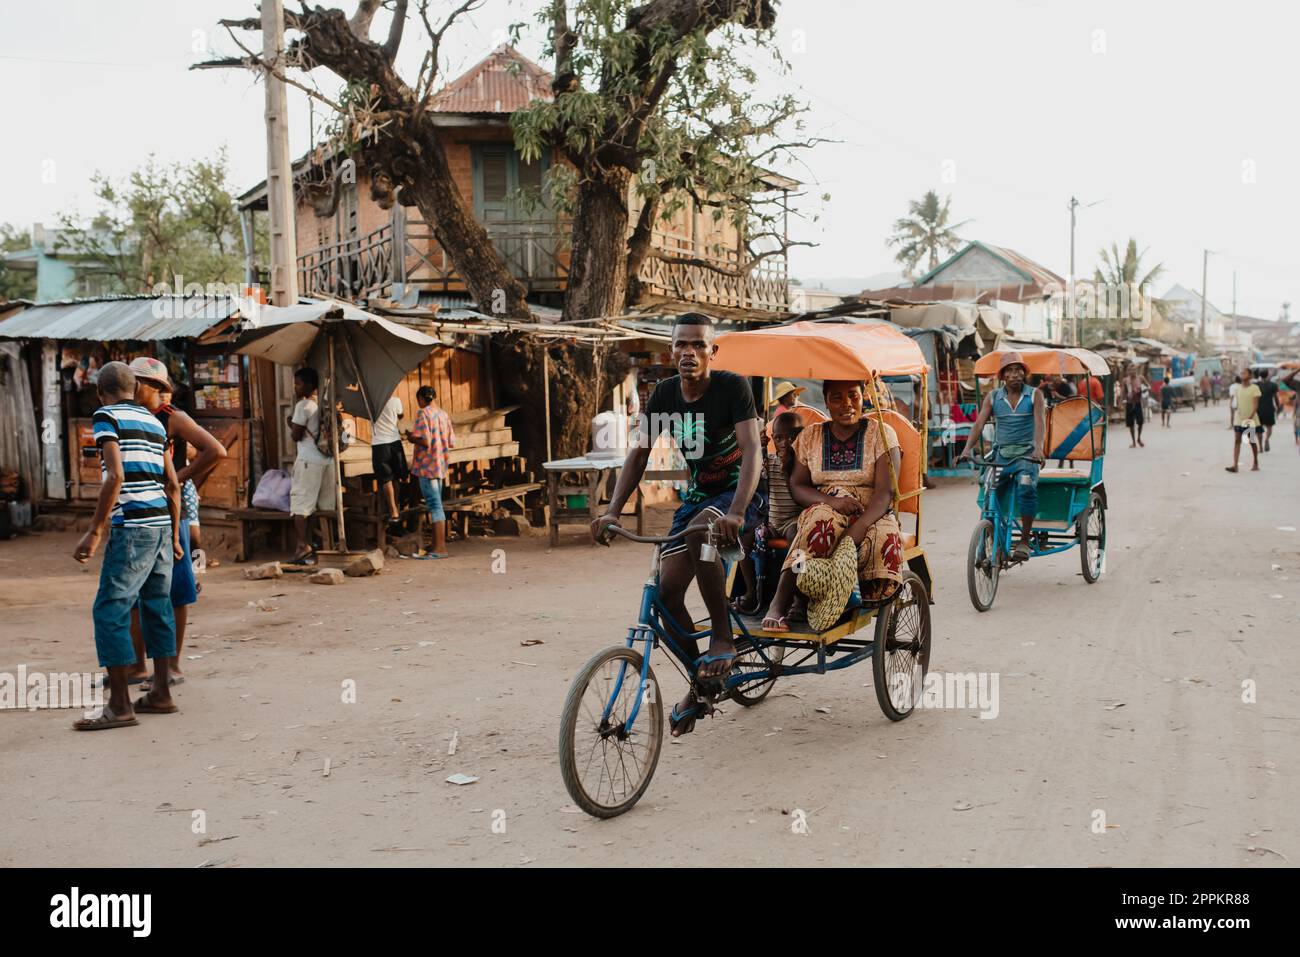 Ein traditionelles Rikscha-Fahrrad mit madagassischen Einwohnern auf der Straße von Miandrivazo, eine der Möglichkeiten, Geld zu verdienen. Das Alltagsleben auf der Straße Madagaskars. Stockfoto